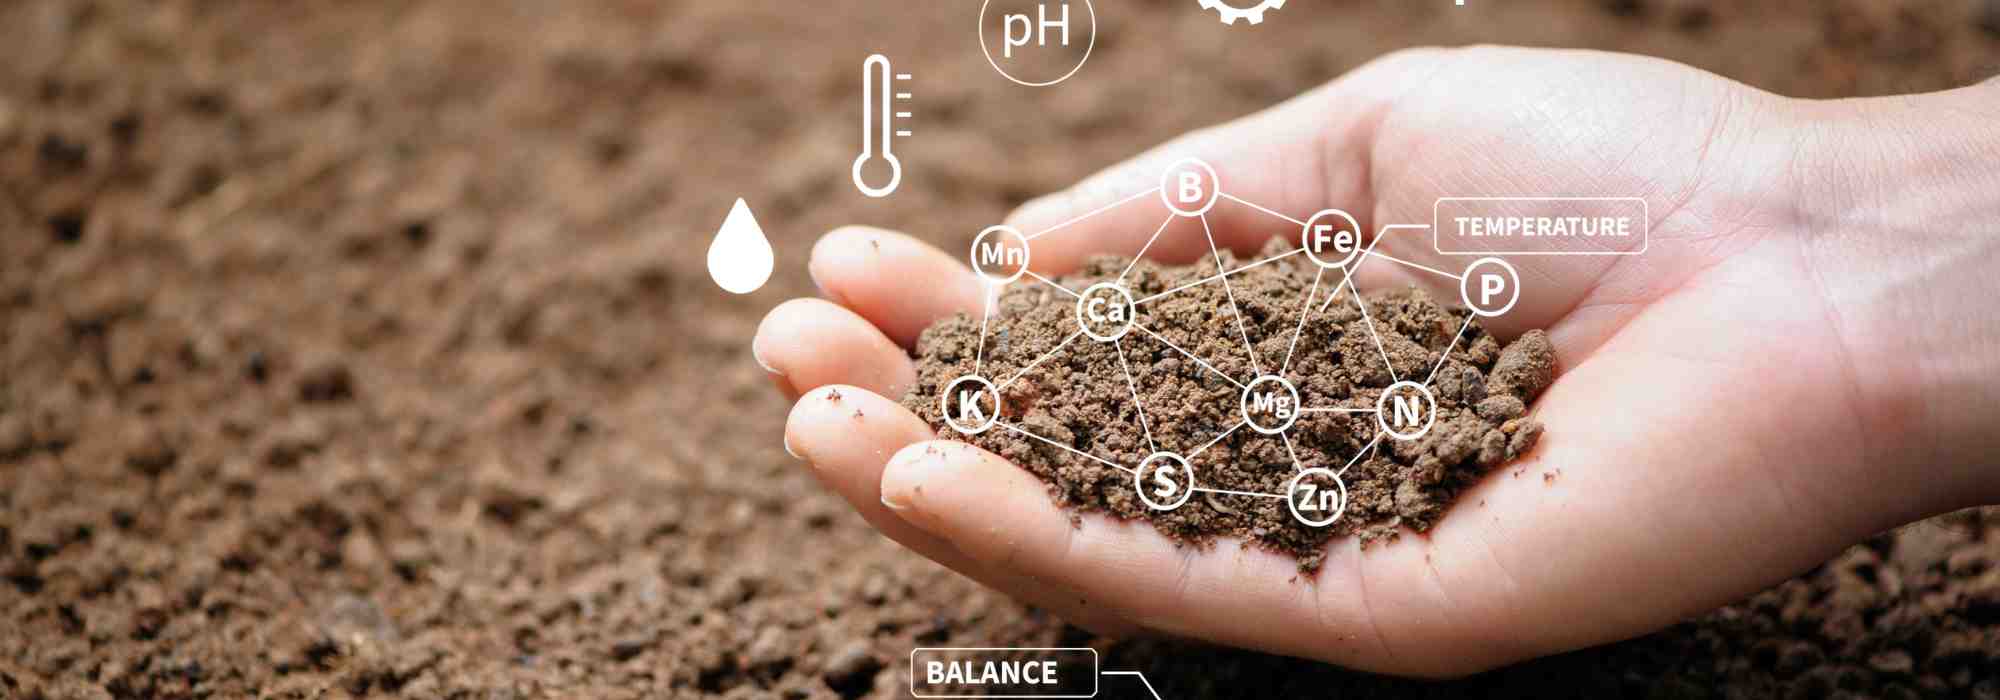 Comment reconnaitre un sol pollué dans son jardin ?